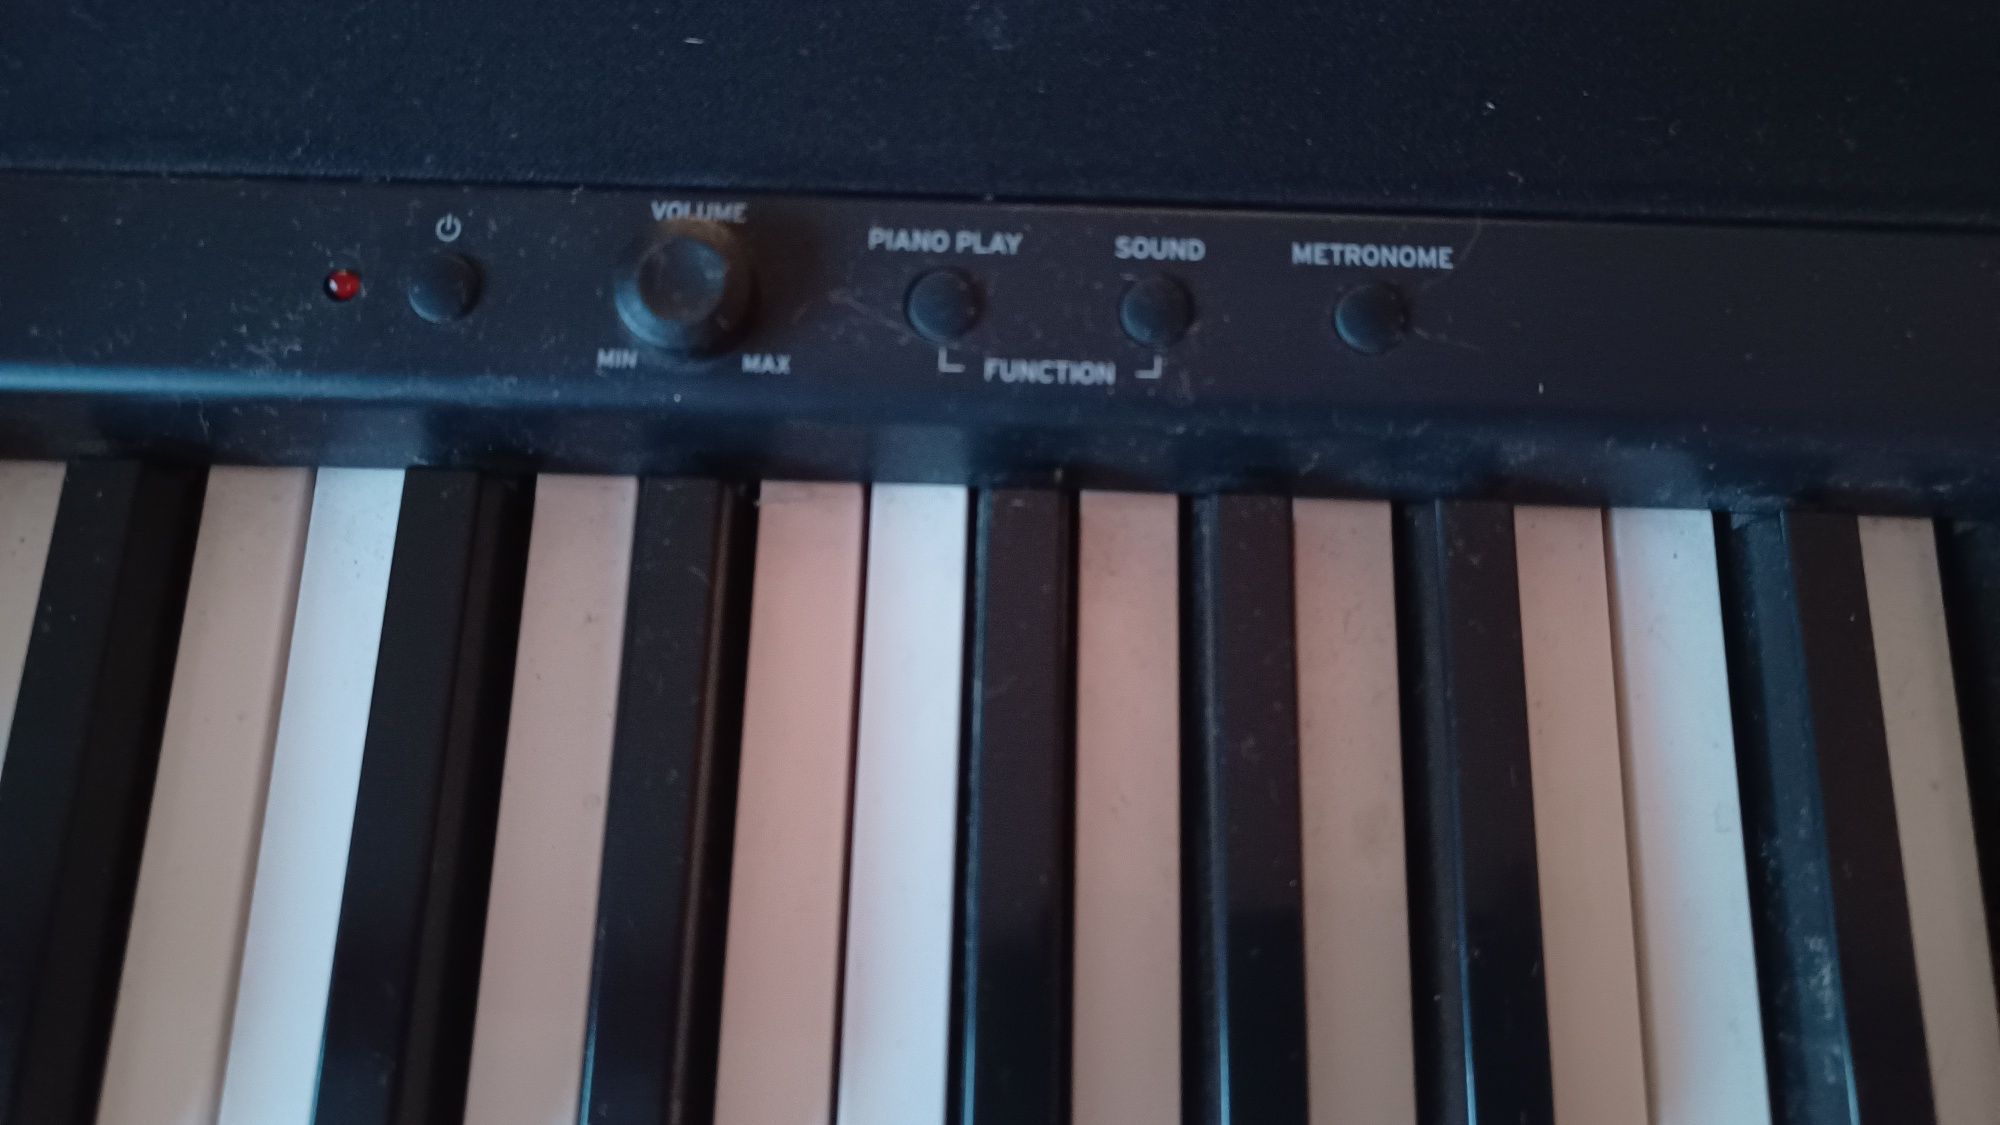 Pian Korg B1 digital piano